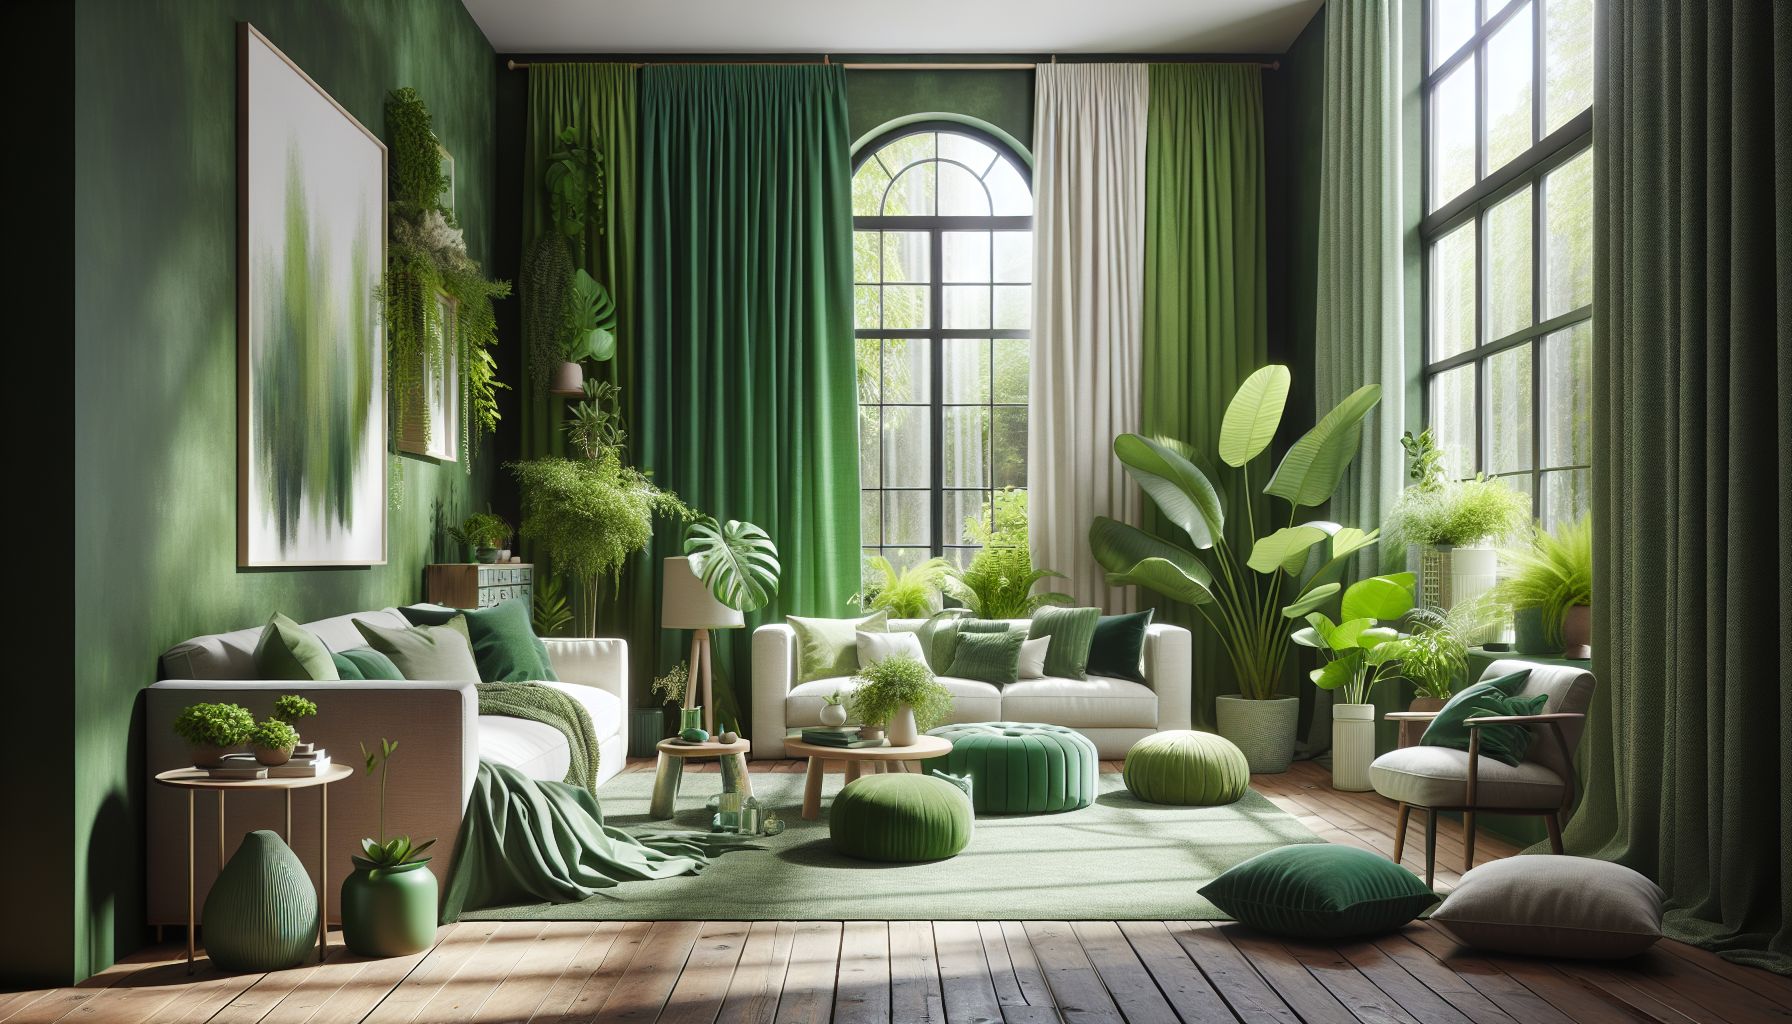 Wohnzimmer in Grün: Ideen und Inspiration- Setze auf grüne Vorhänge für Atmosphäre